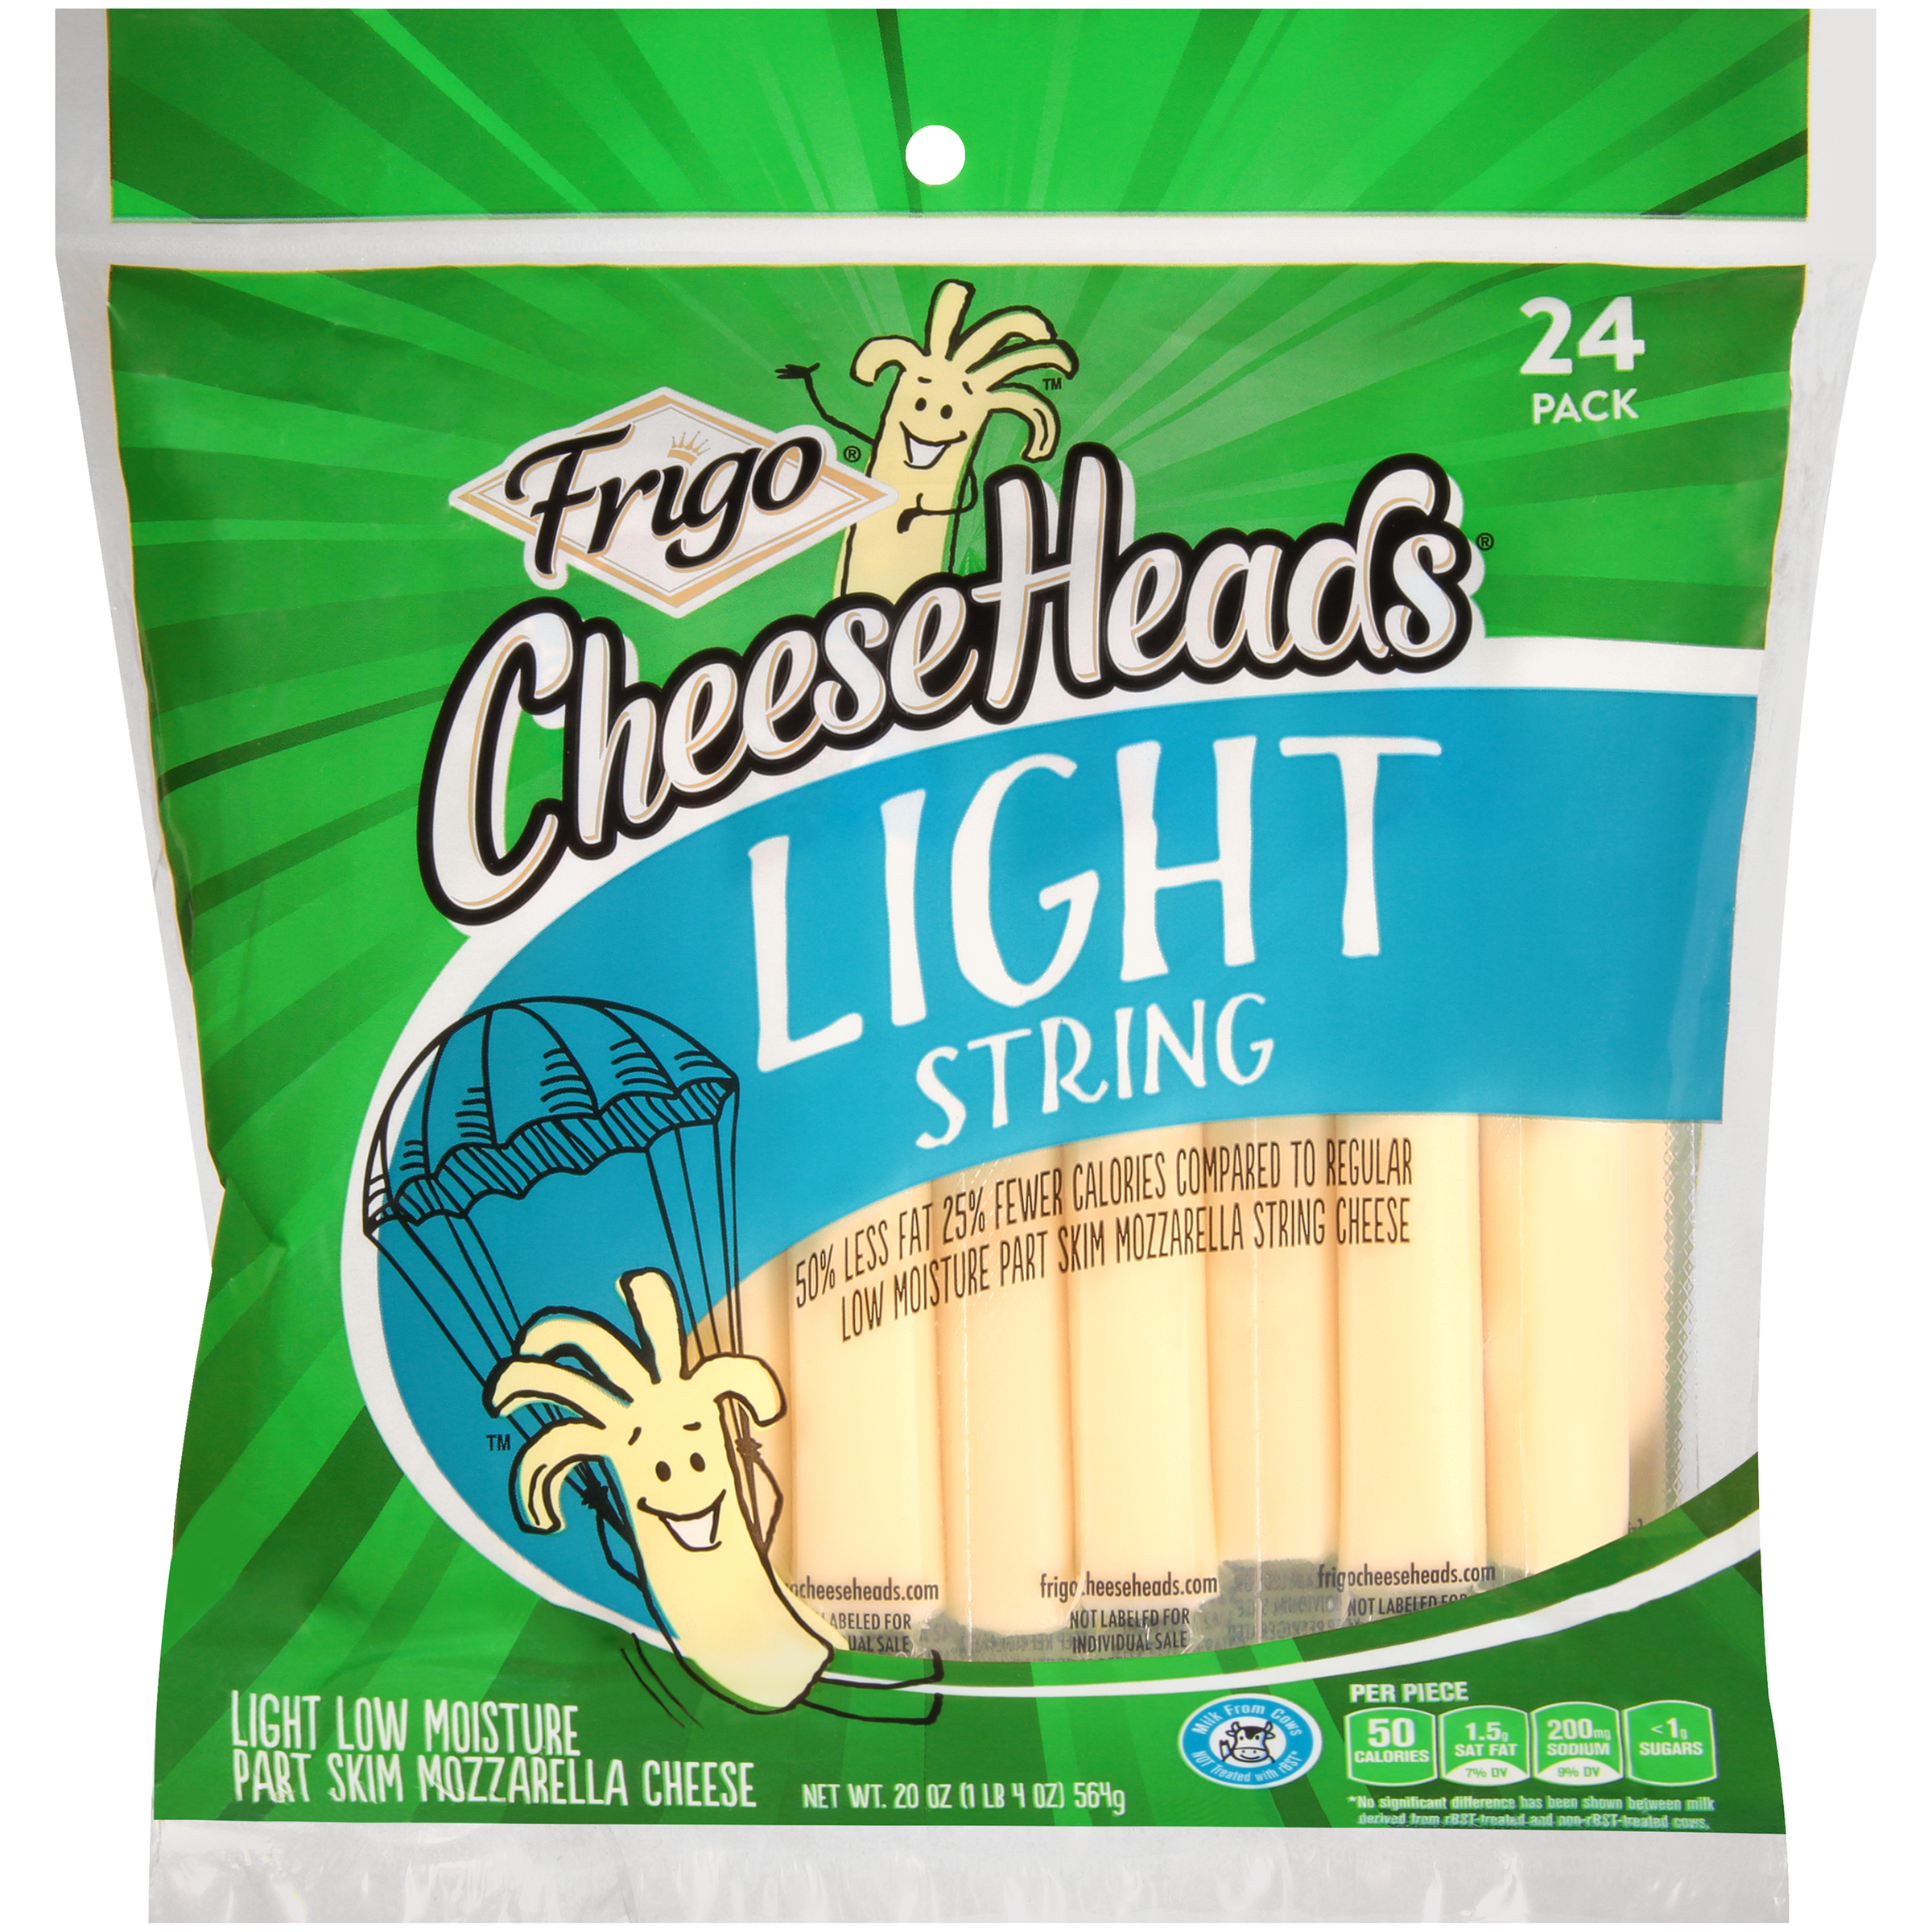 Frigo Cheese Heads String Cheese, 100% Natural, Light, 24 - 1 oz pieces [24 oz (1 lb 8 oz) 680 g]